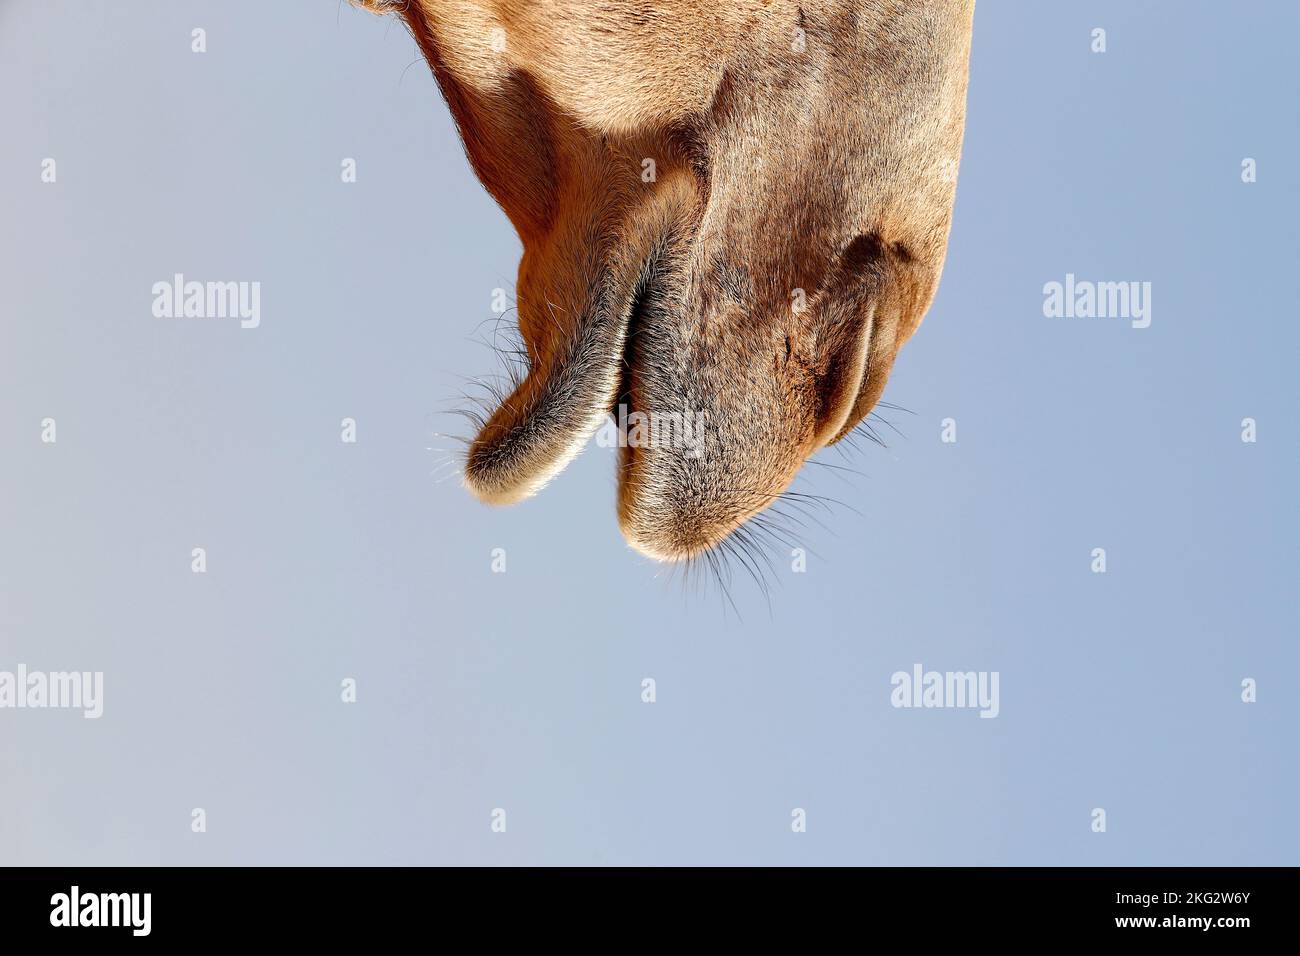 Ferme de chameaux dans le désert d'Abu Dhabi. Émirats arabes Unis Banque D'Images